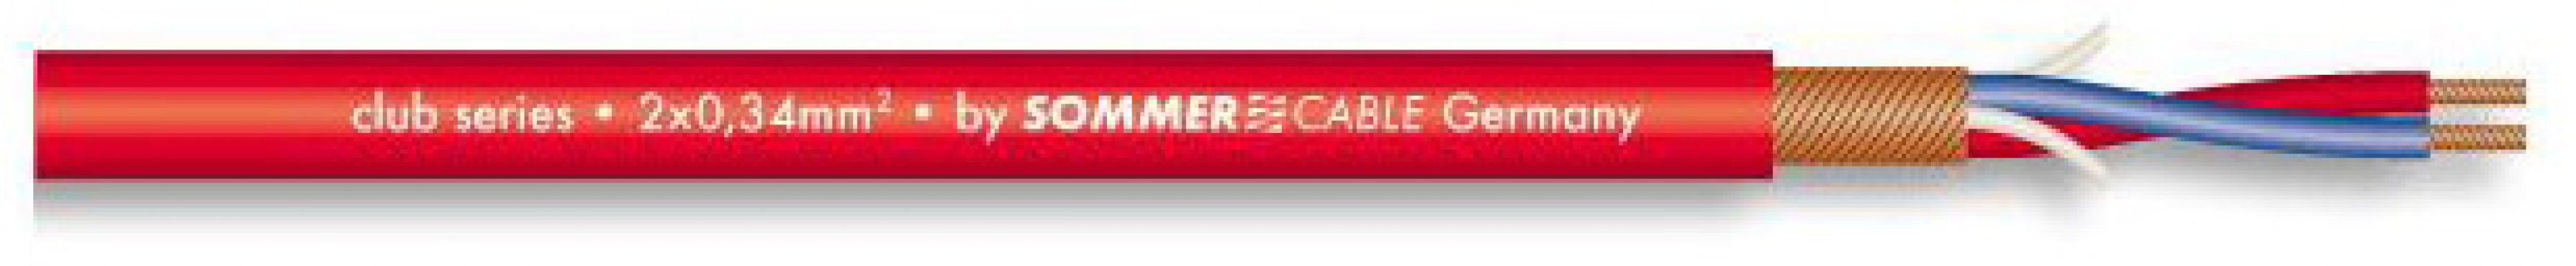 Sommer Cable 200-0053 CLUB SERIES MKII - ČERVENÝ